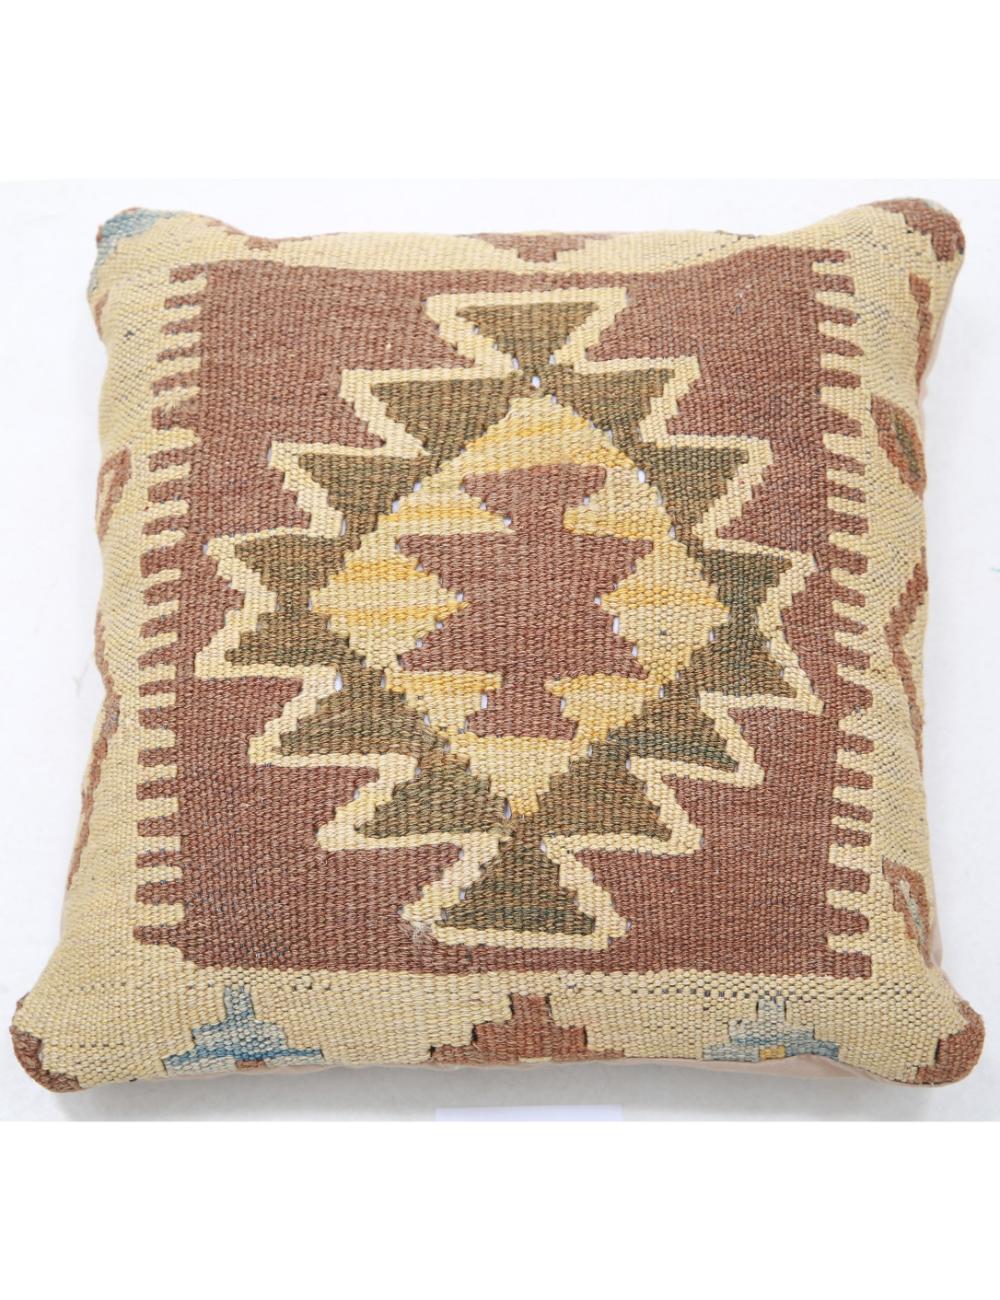 Hand Woven Tribal Multi Color Geometric Wool Pillow - 1&#39;5&#39;&#39; x 1&#39;5&#39;&#39; Arteverk Arteverk Rugs